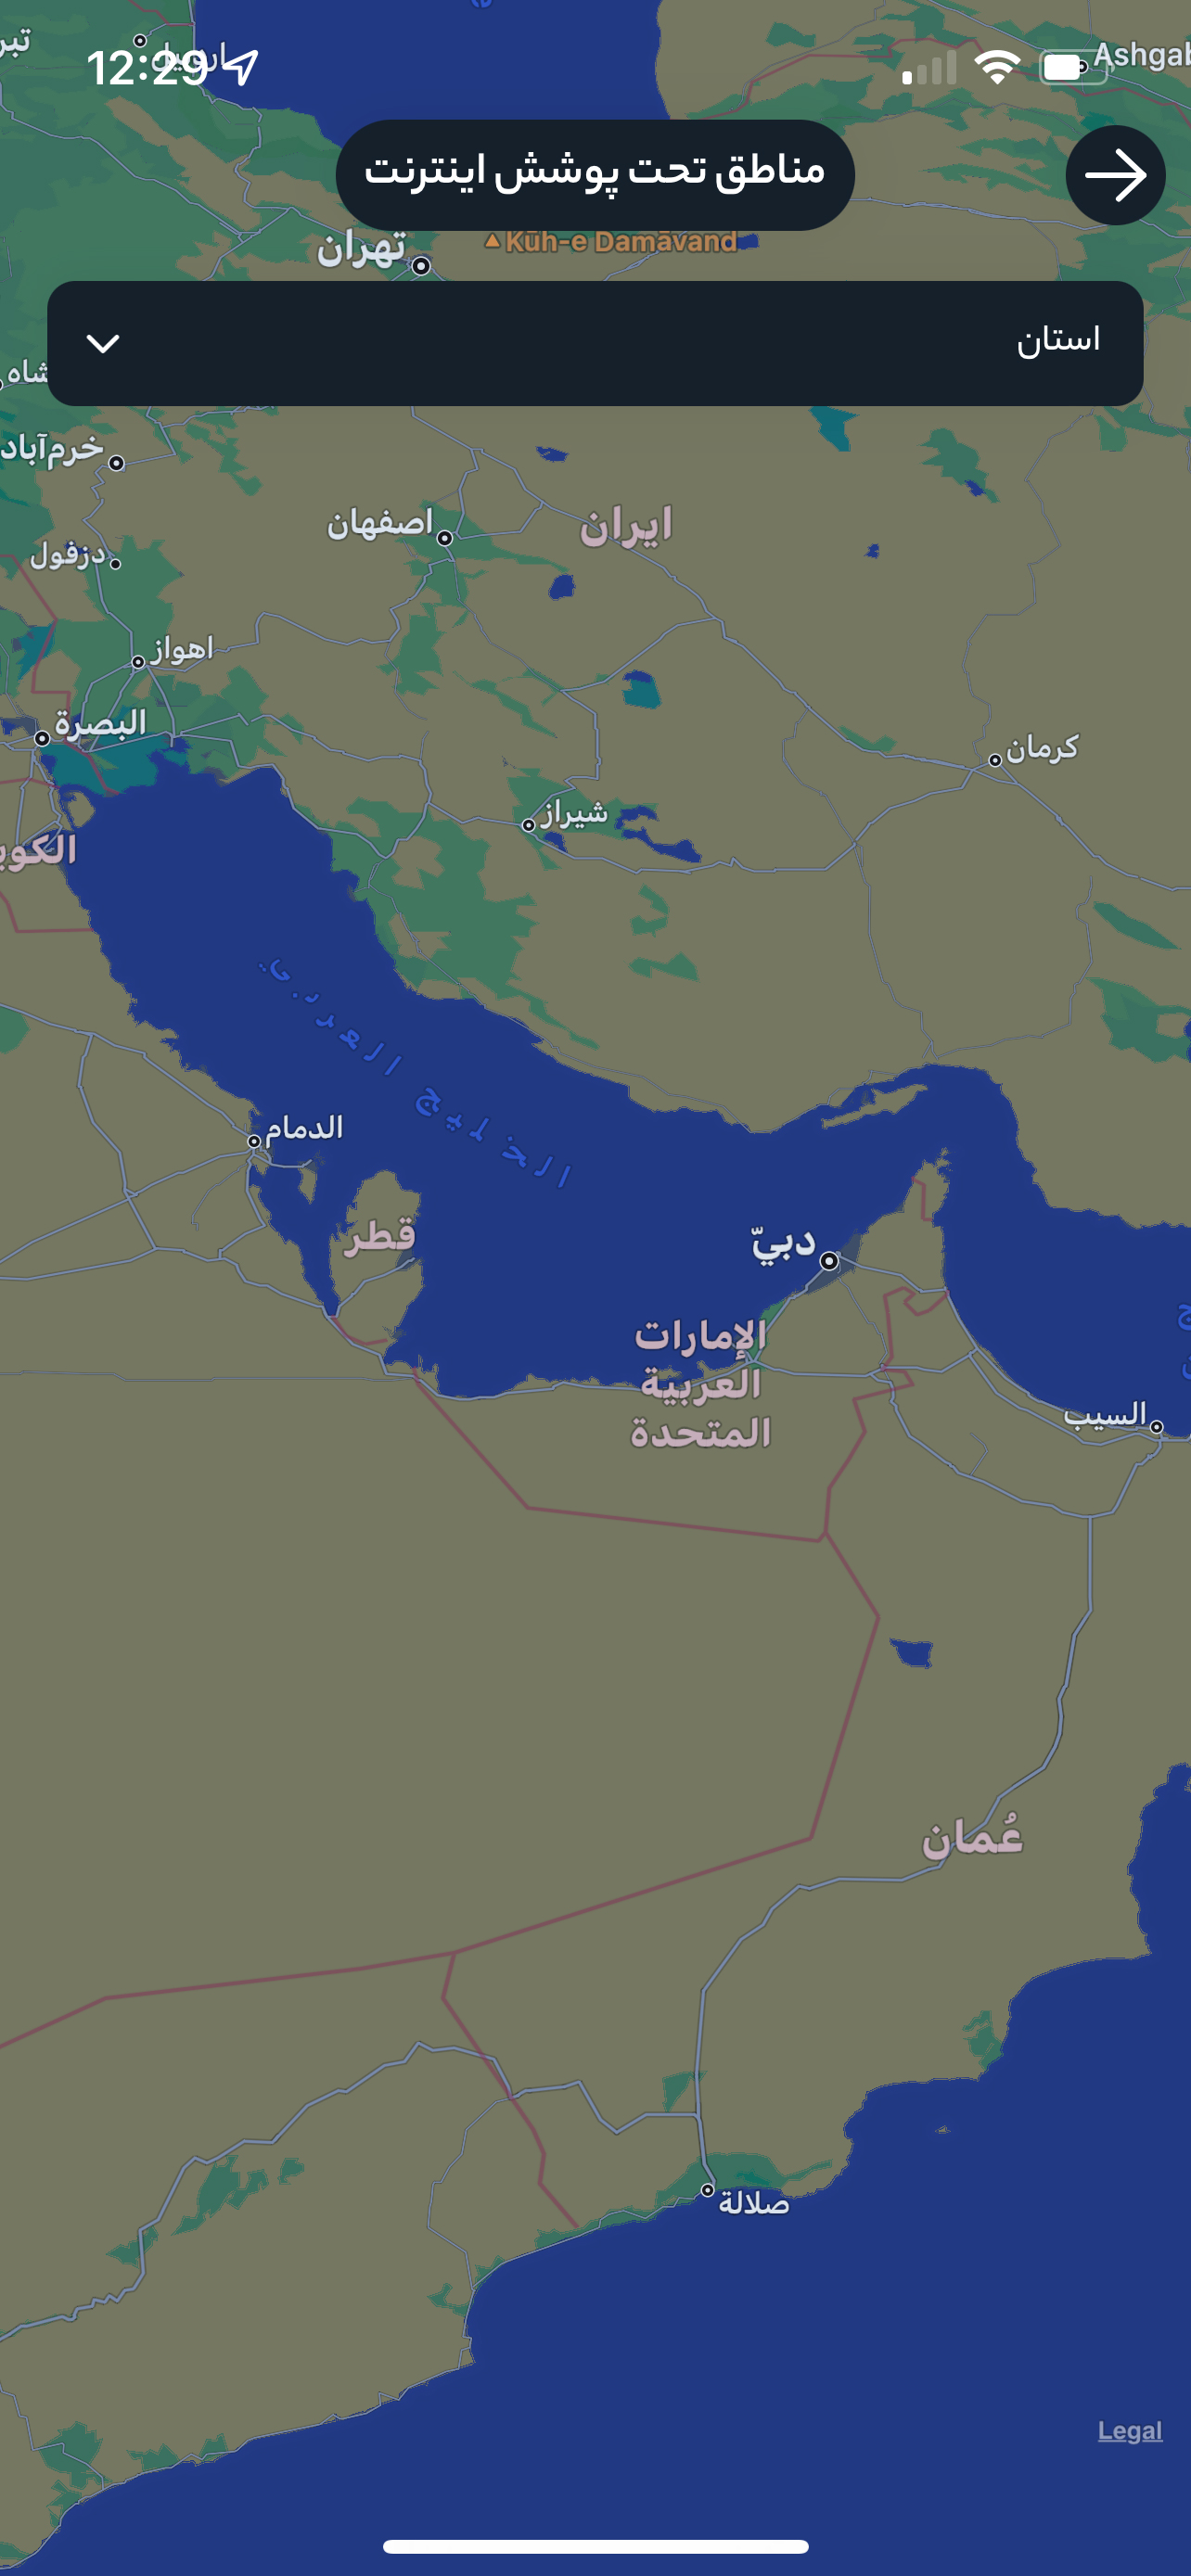 چرا استفاده از نام جعلی خلیج فارس در وب‌سایت همراه اول خبرساز شده است؟